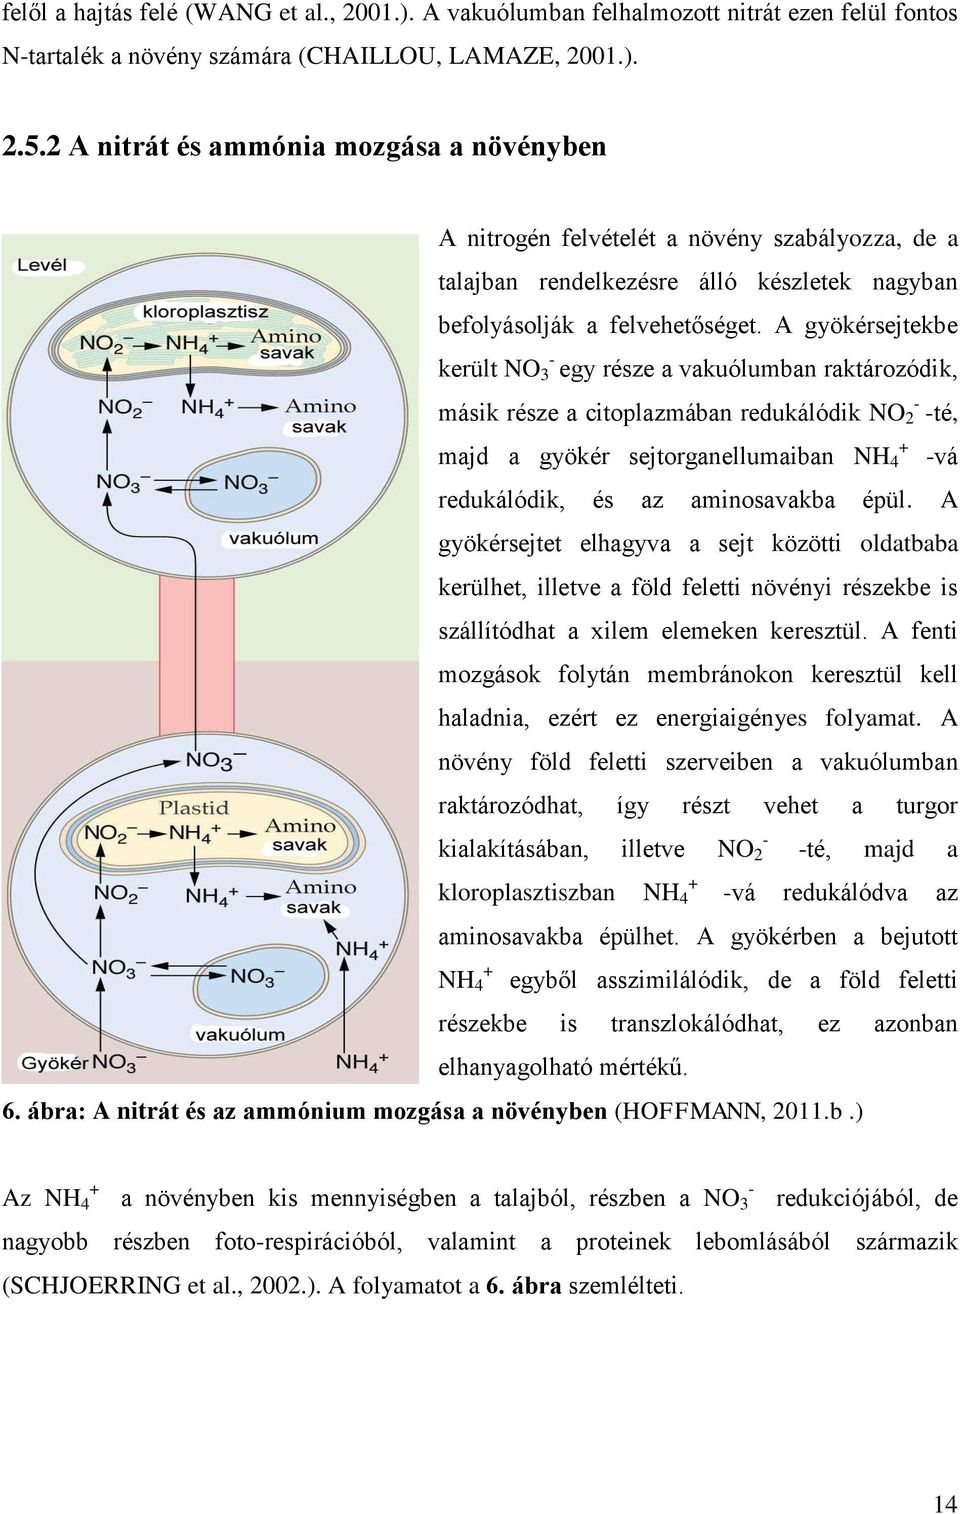 A gyökérsejtekbe - került NO 3 egy része a vakuólumban raktározódik, - másik része a citoplazmában redukálódik NO 2 -té, + majd a gyökér sejtorganellumaiban NH 4 -vá redukálódik, és az aminosavakba